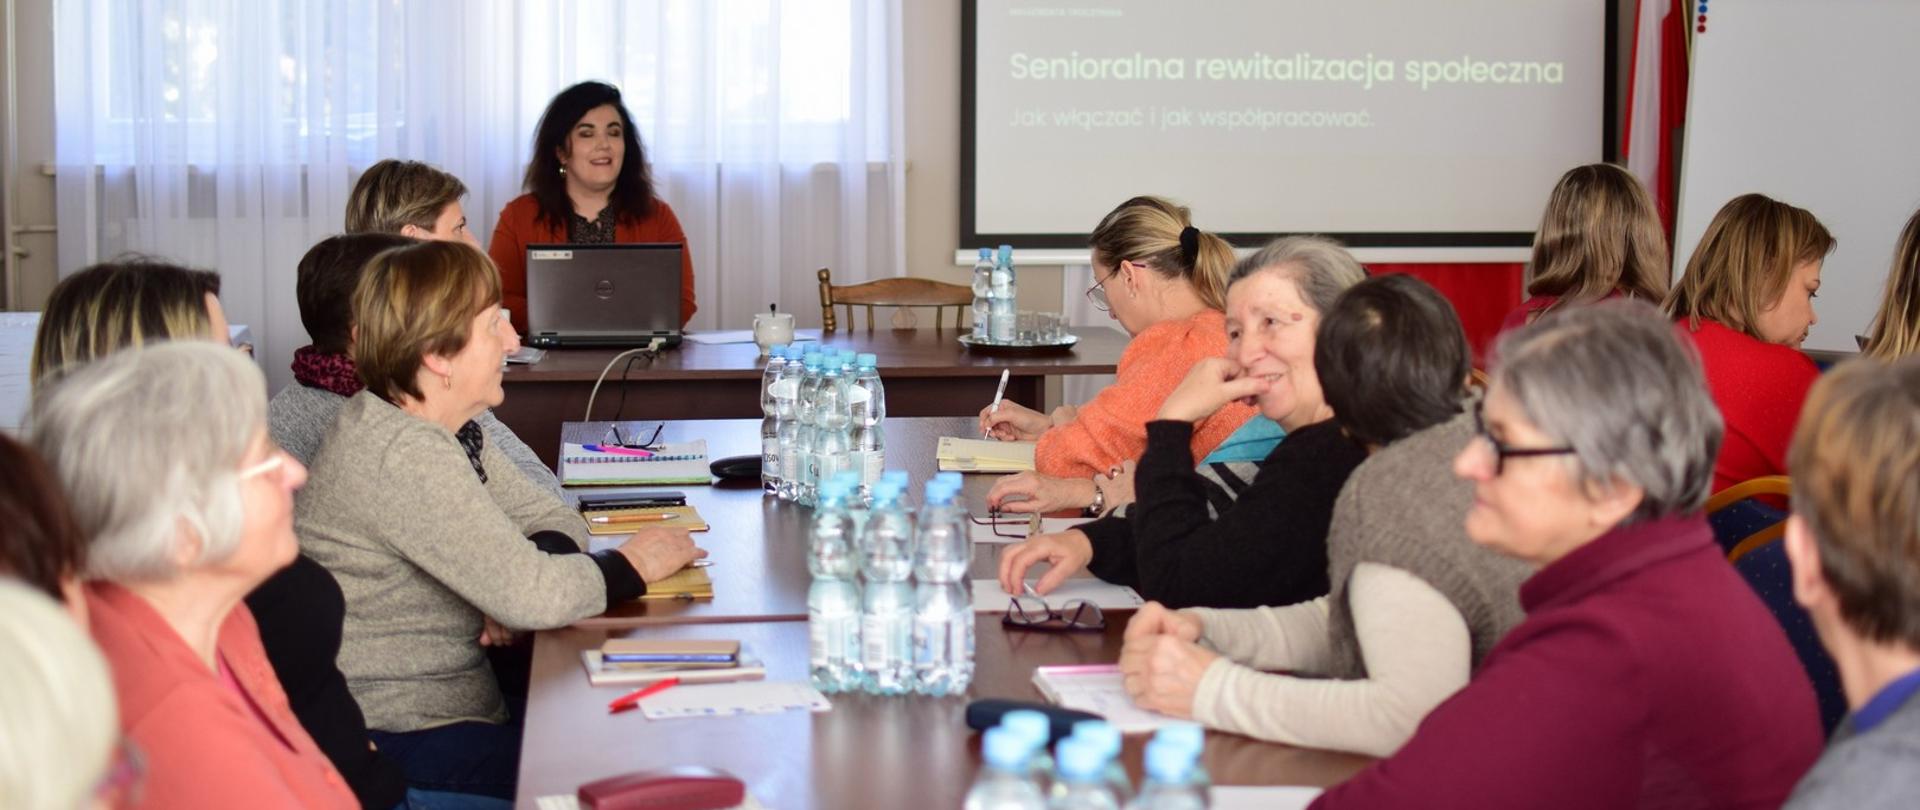 Uczestnicy podczas warsztatów w ramach Gminnego Programu Rewitalizacji Gminy Wierzbica